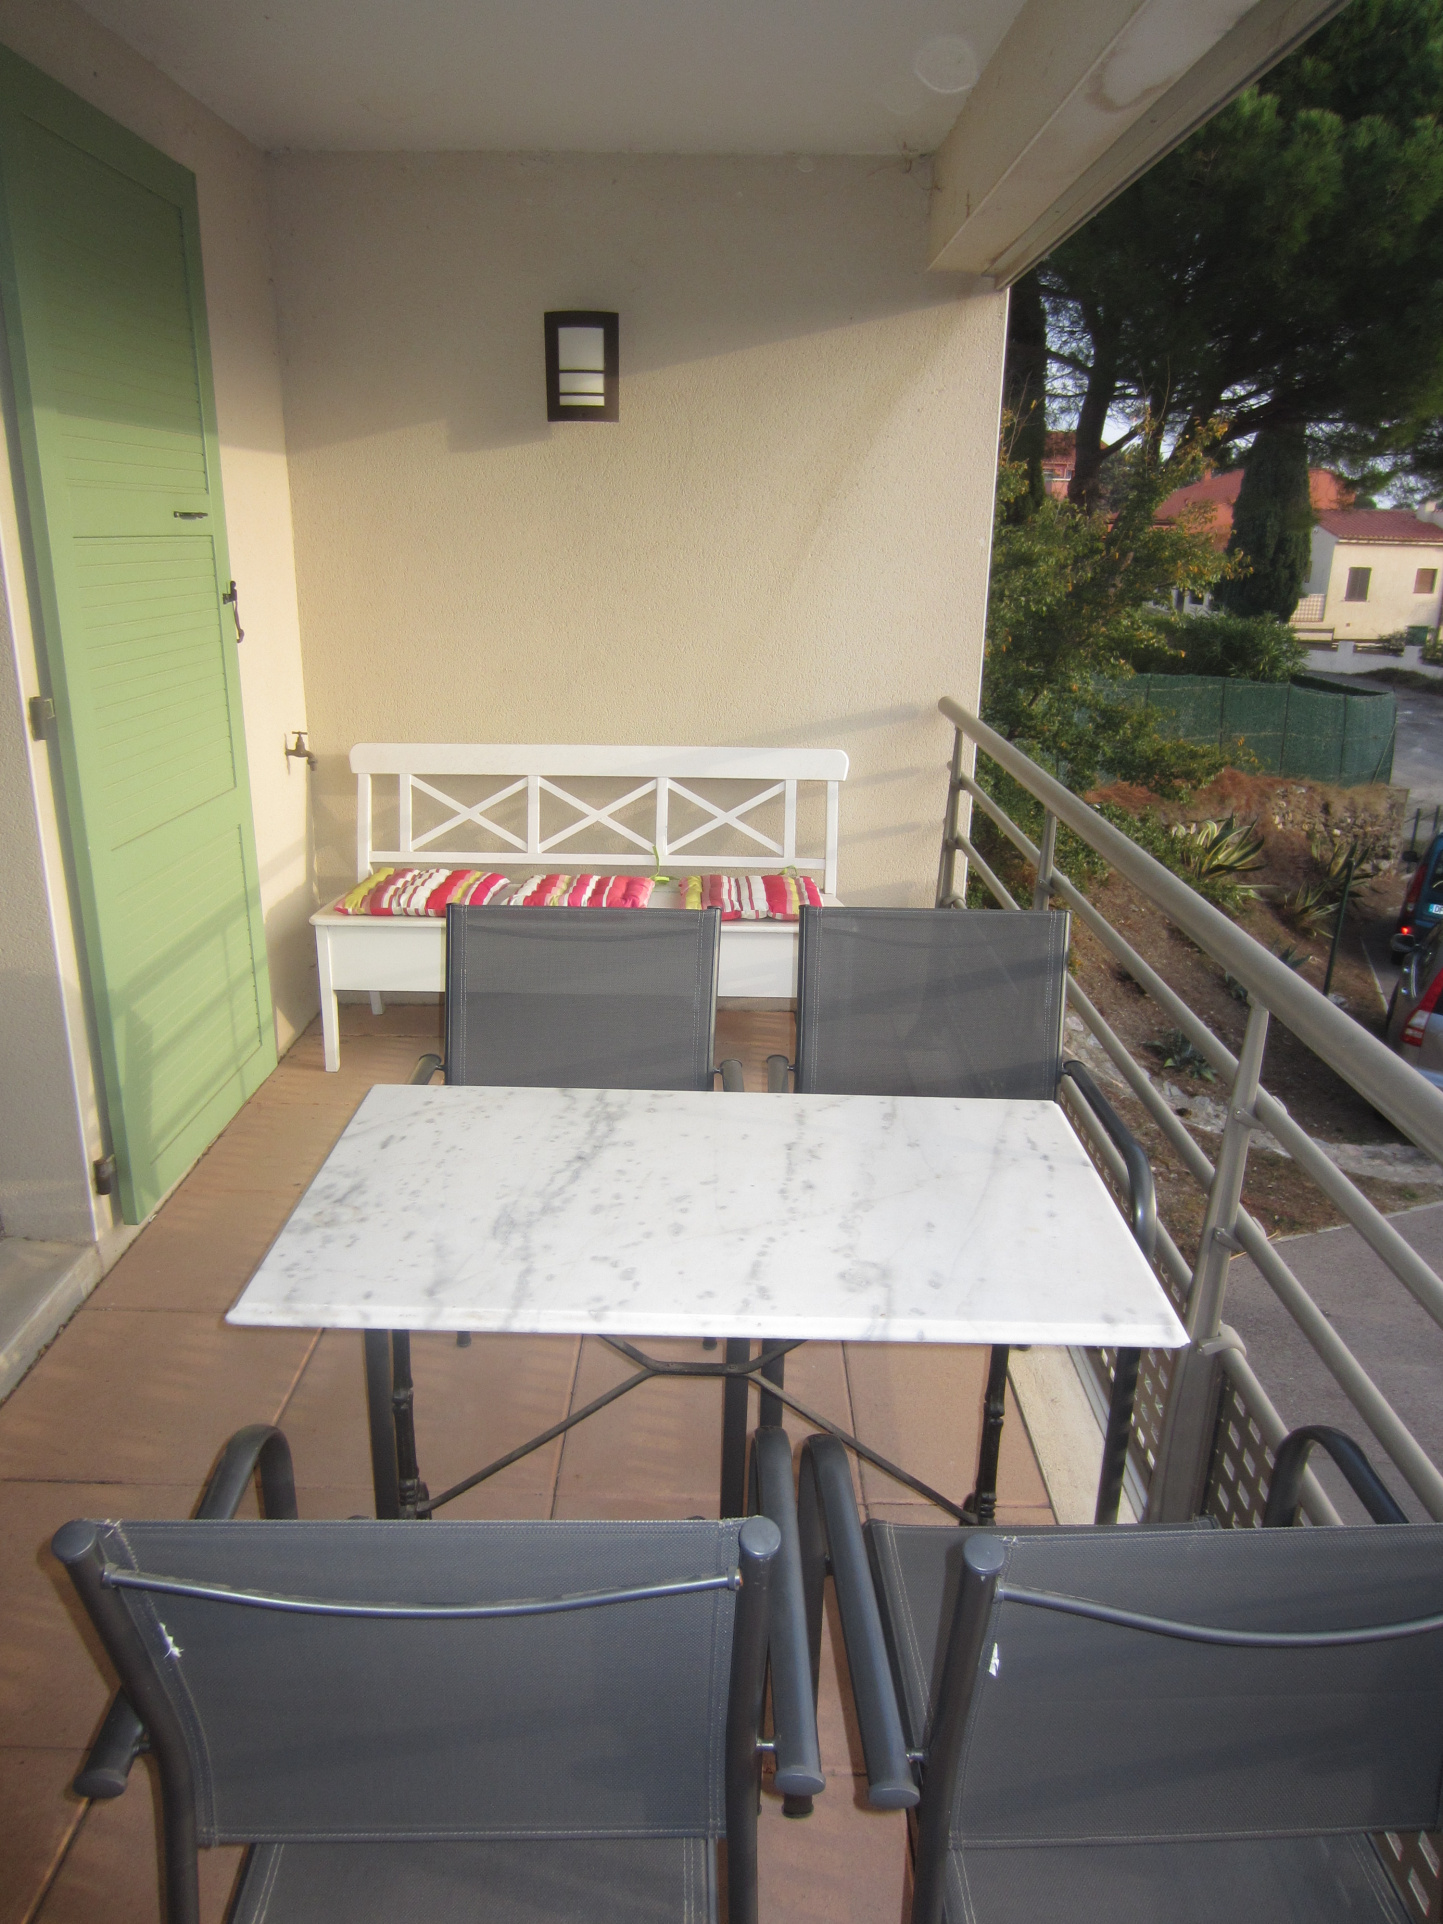 Appartement deux pièces terrasse Collioure